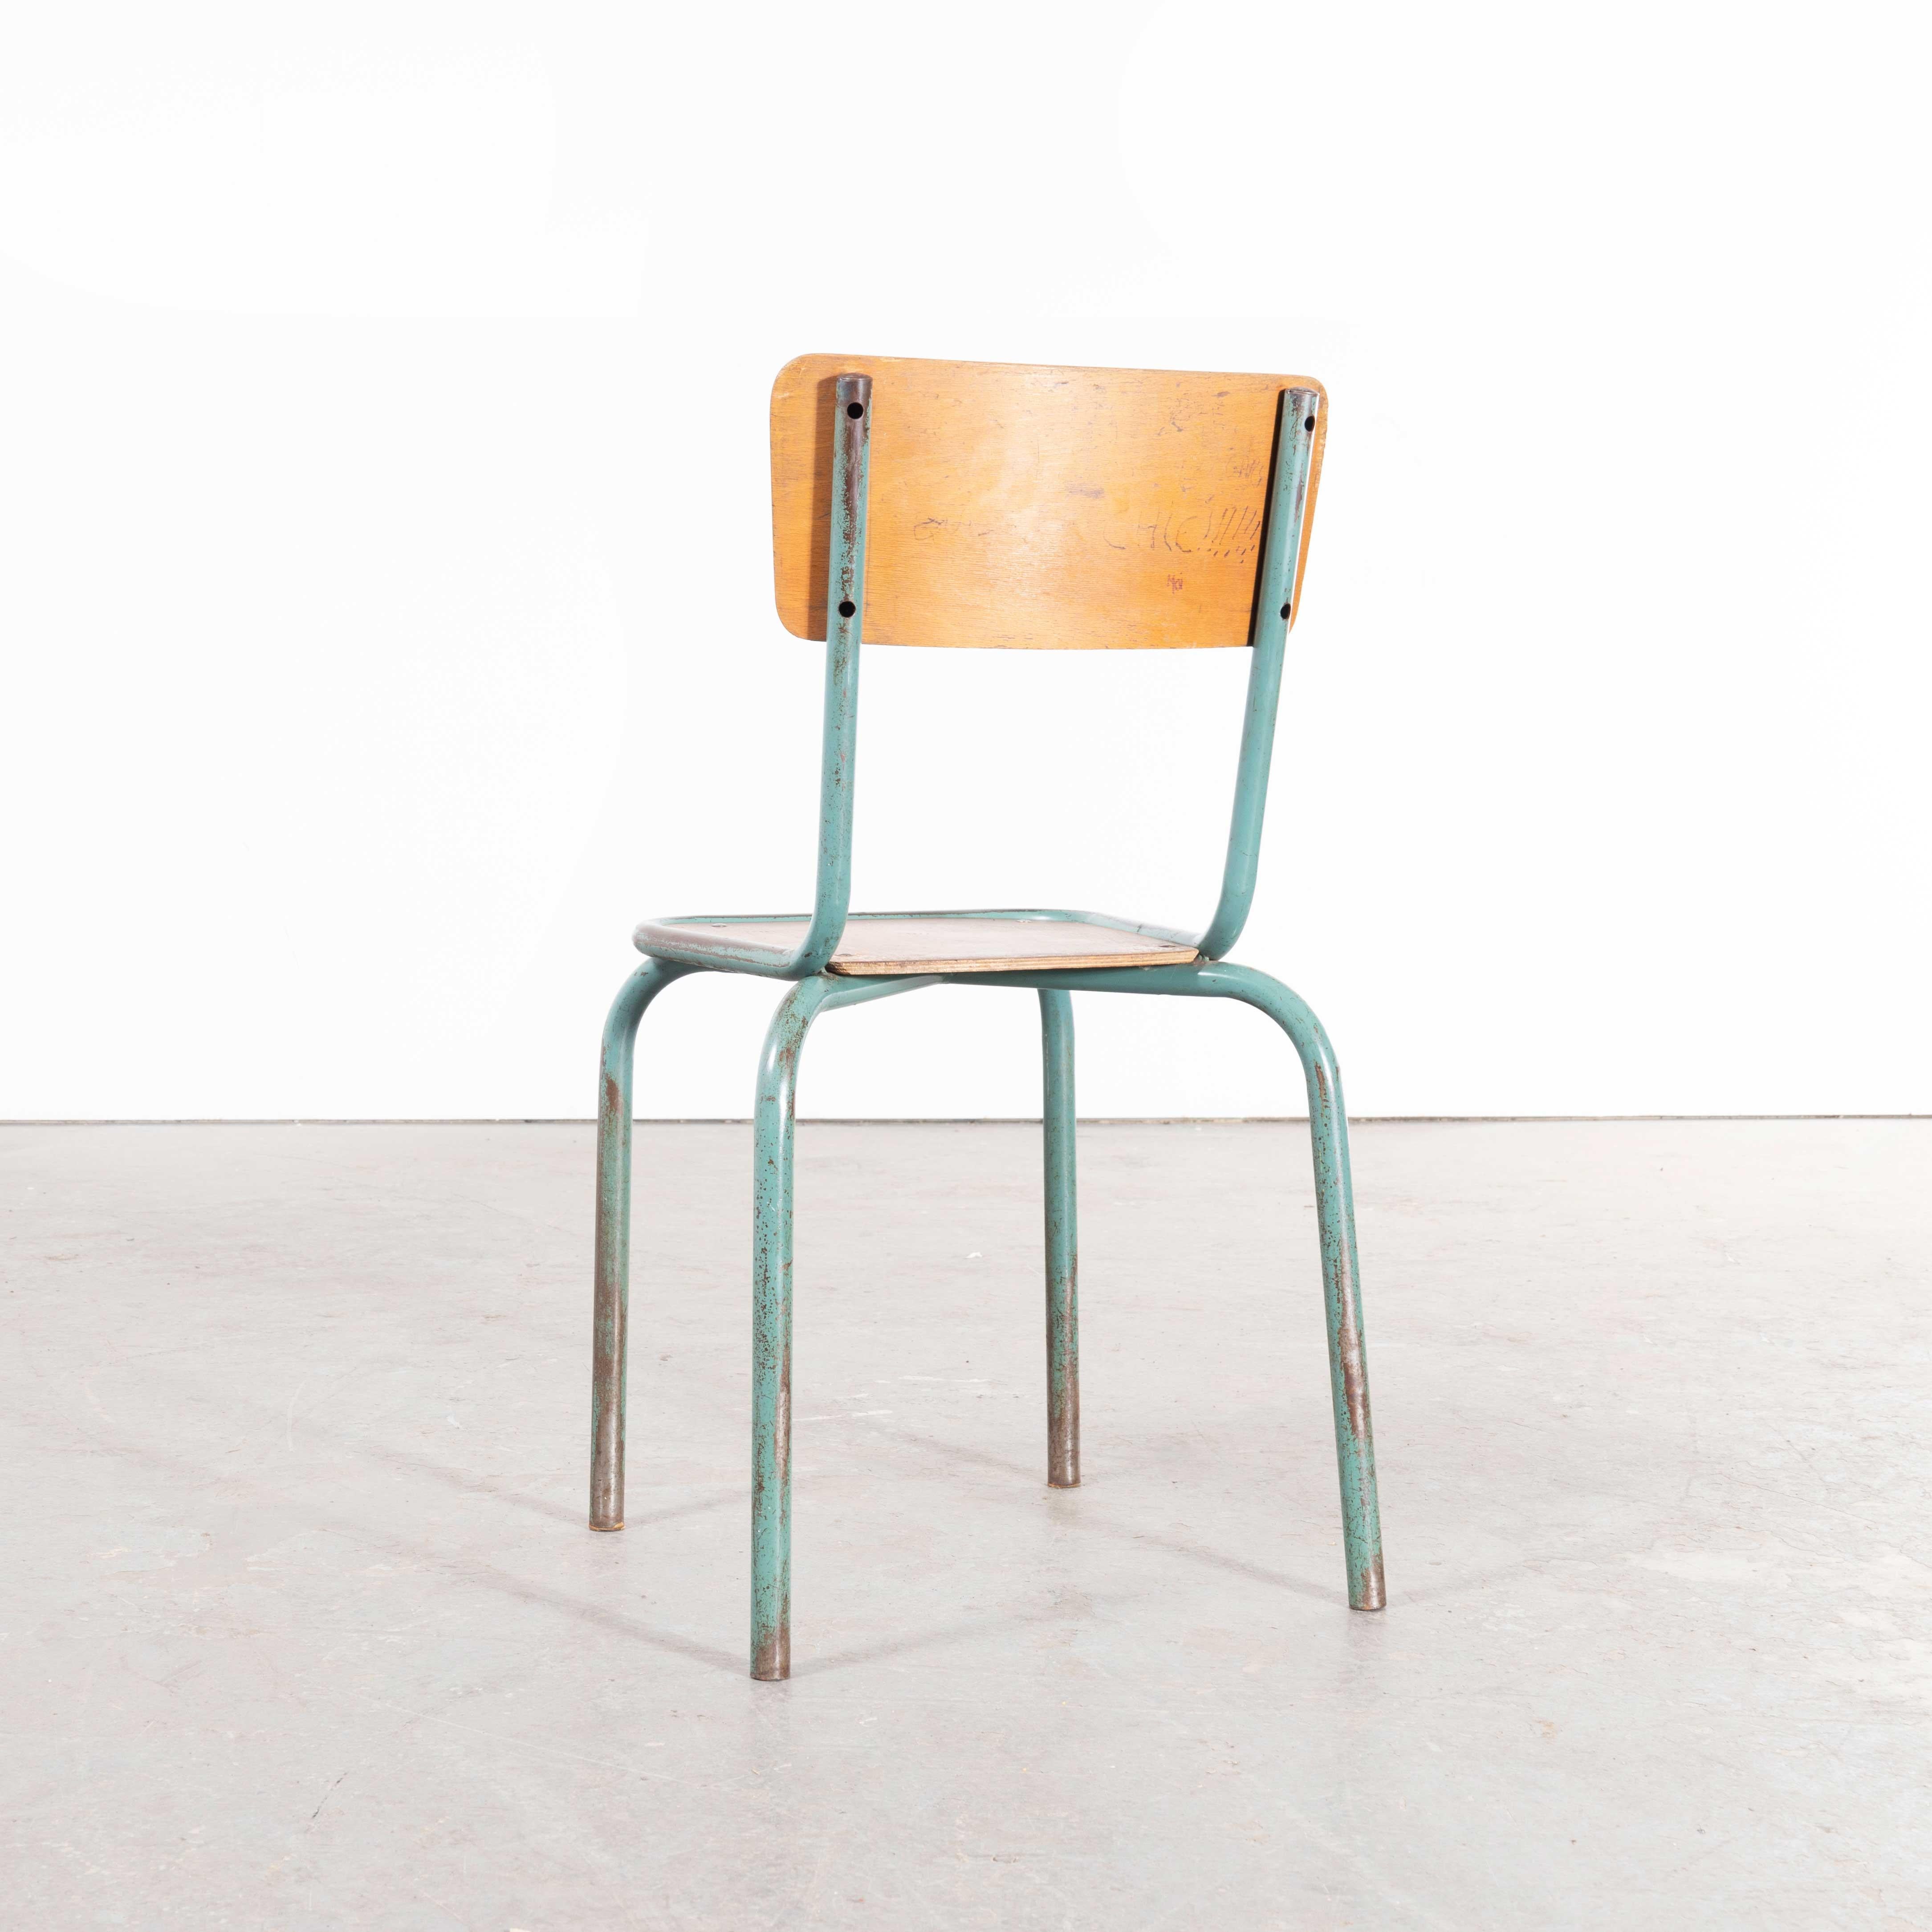 1950's French Mullca Framed Seat Stacking Dining Chairs - Satz von acht
1950's French Mullca Framed Seat Stacking Dining Chairs - Set von acht. Einer unserer Lieblingsstühle. 1947 gründeten Robert Muller und Gaston Cavaillon das Unternehmen, das den